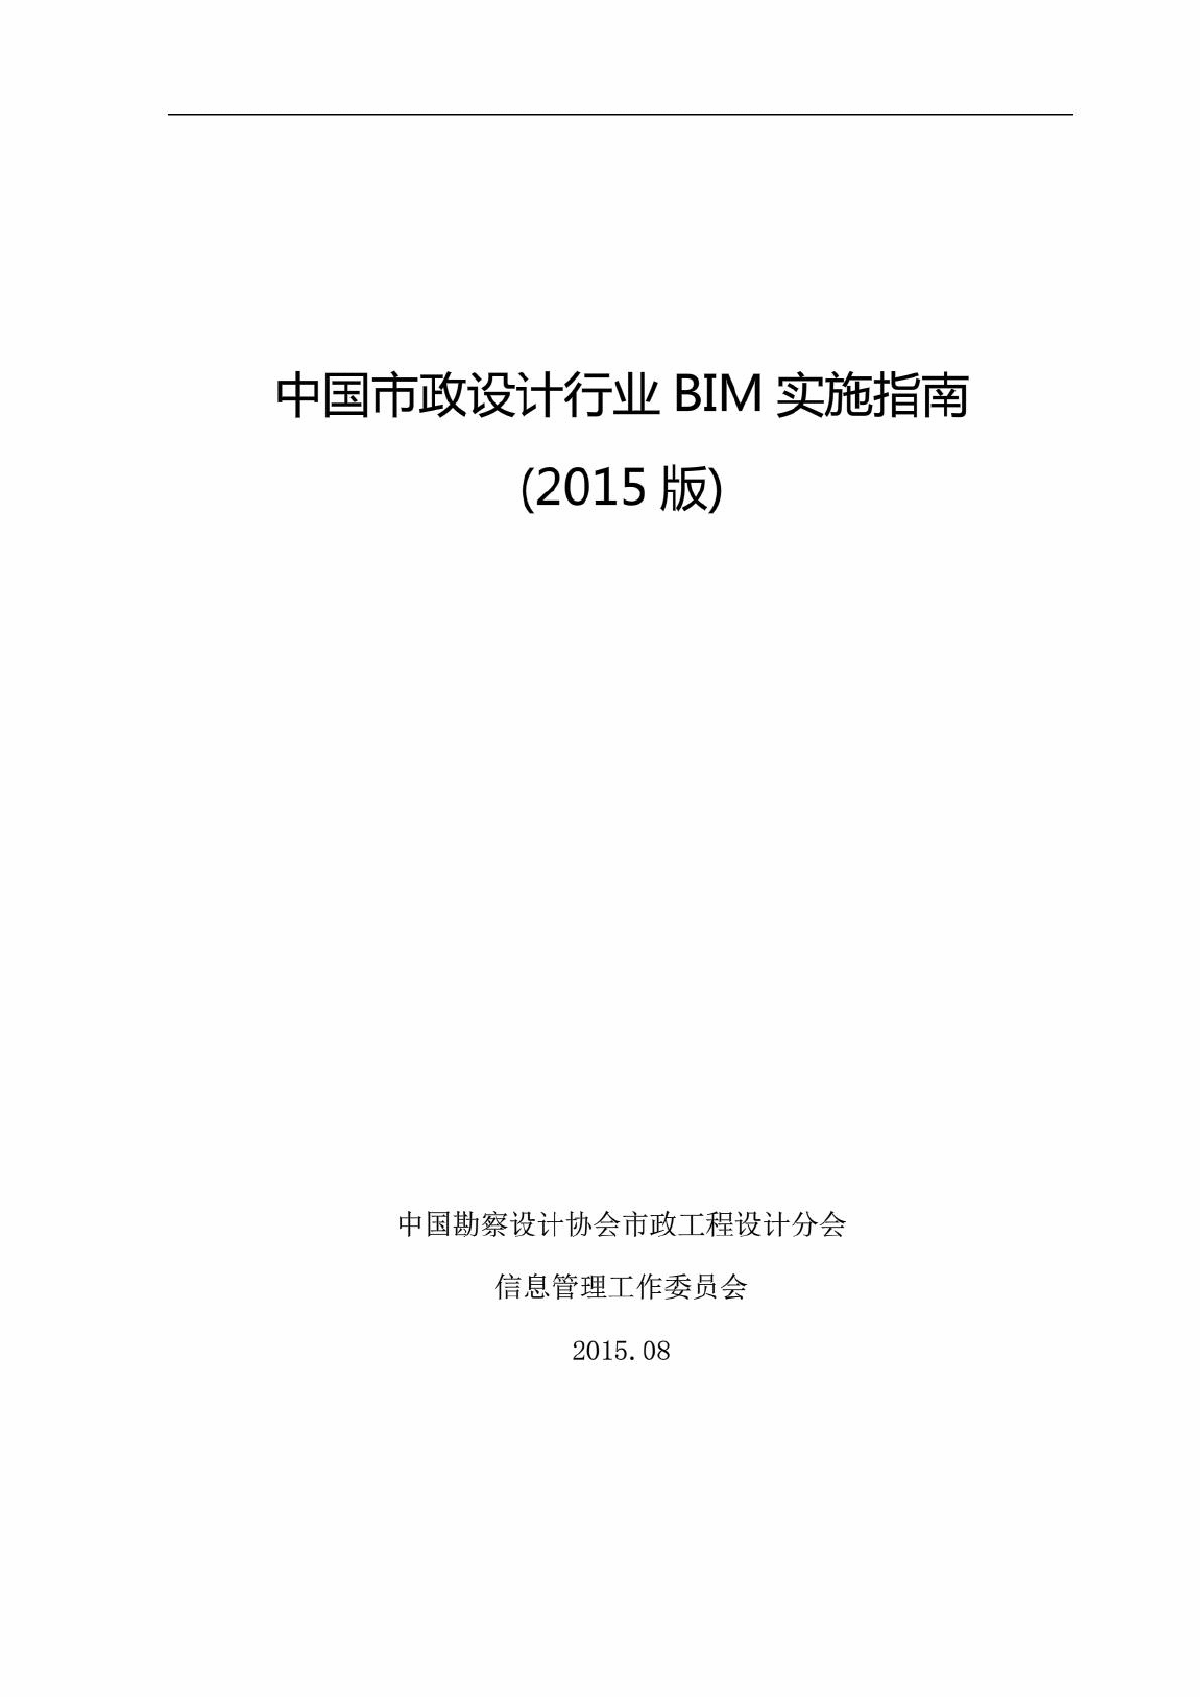 中国市政行业BIM实施指南(正式稿) (1)-图一